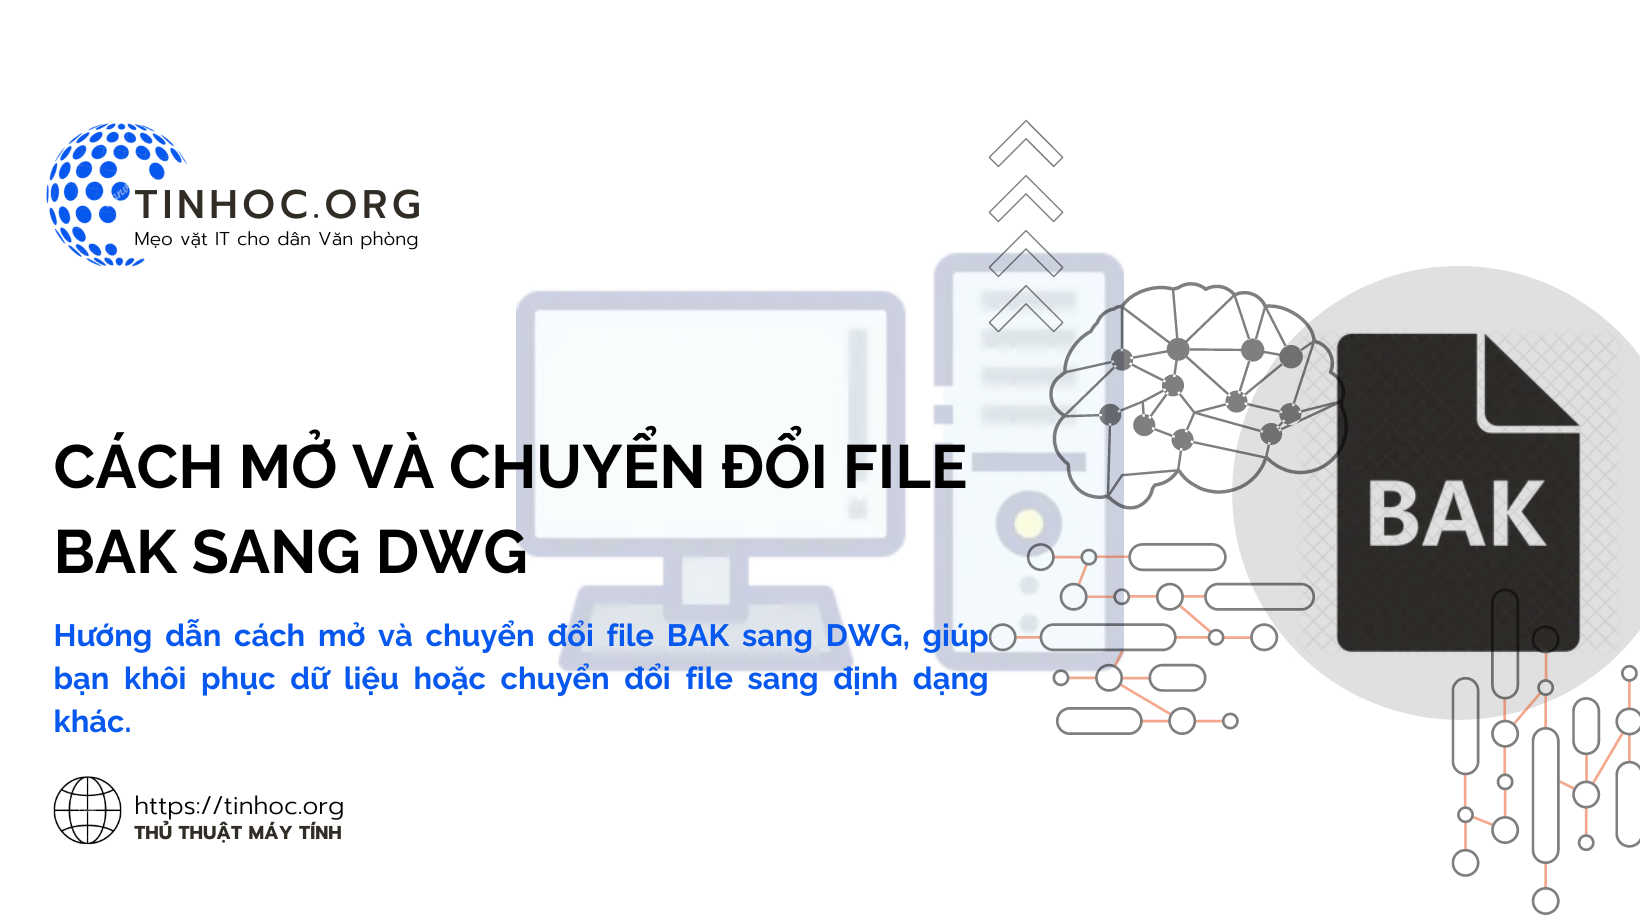 Hướng dẫn cách mở và chuyển đổi file BAK sang DWG, giúp bạn khôi phục dữ liệu hoặc chuyển đổi file sang định dạng khác.